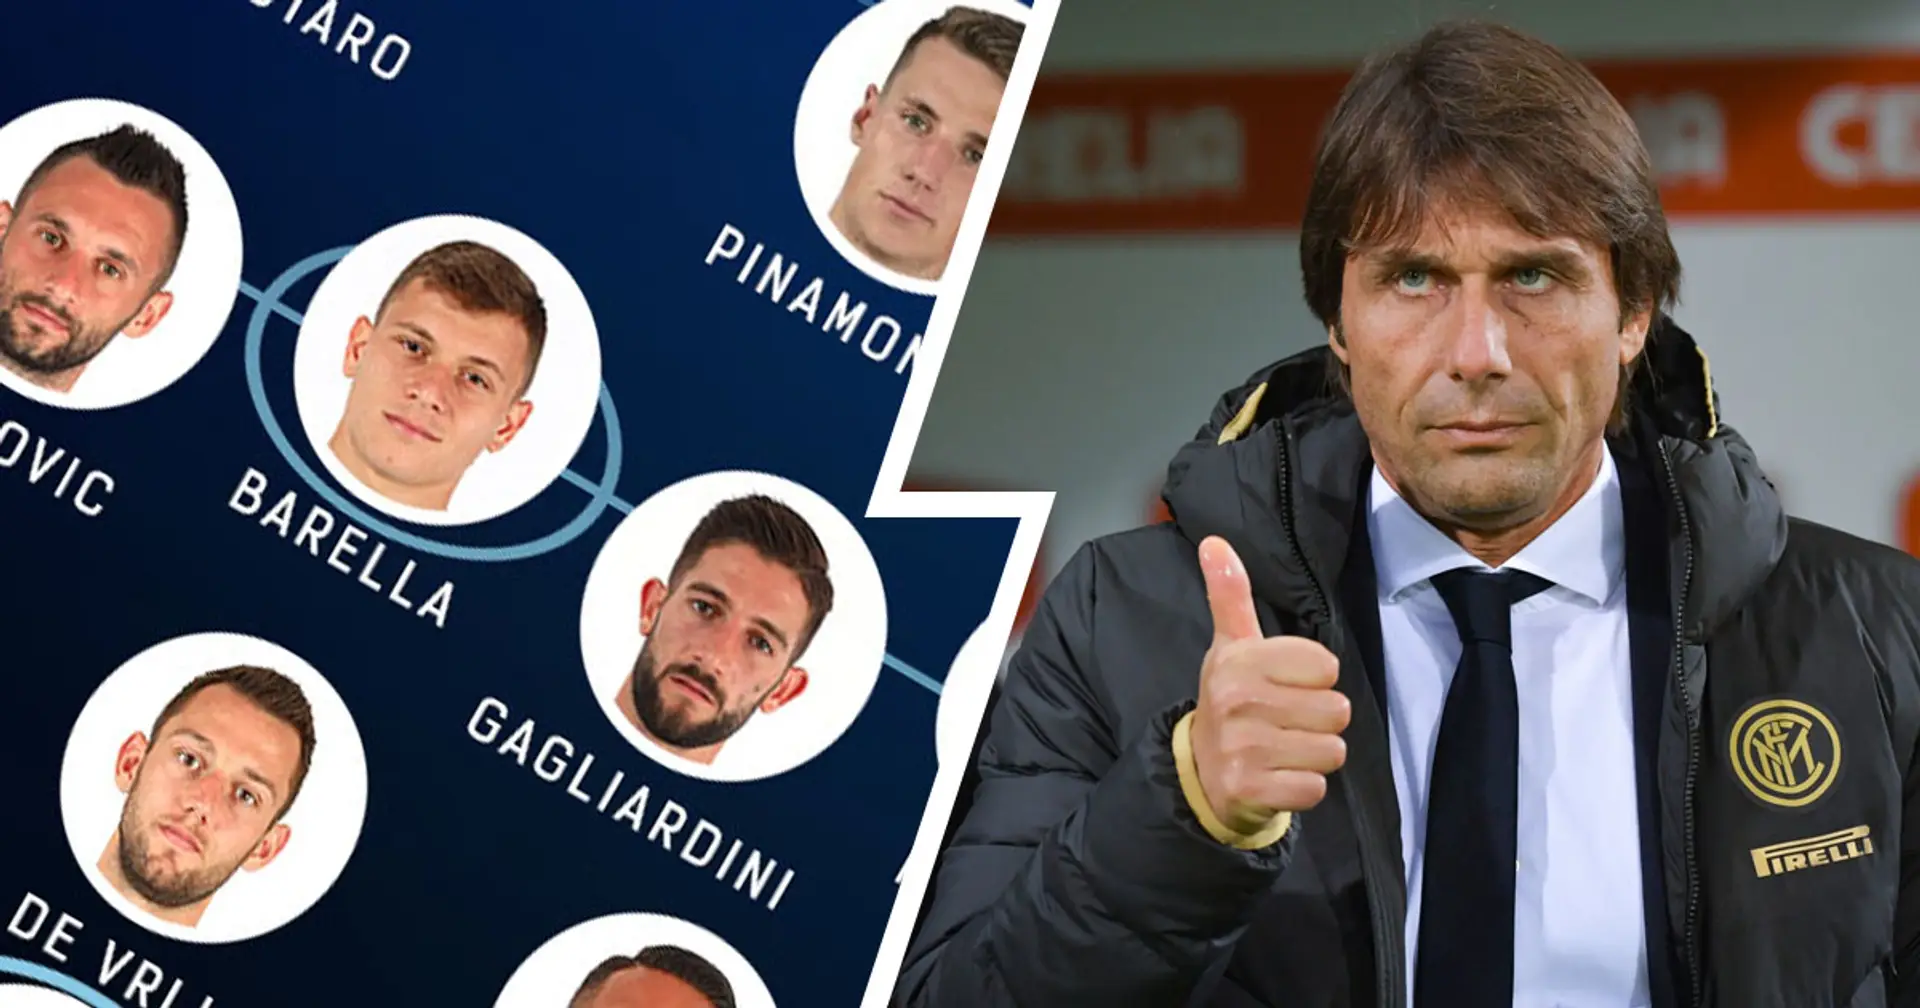 Le probabili formazioni di Inter-Parma: possibile un ampio turnover per Conte, torna Gagliardini, davanti c'è Pinamonti